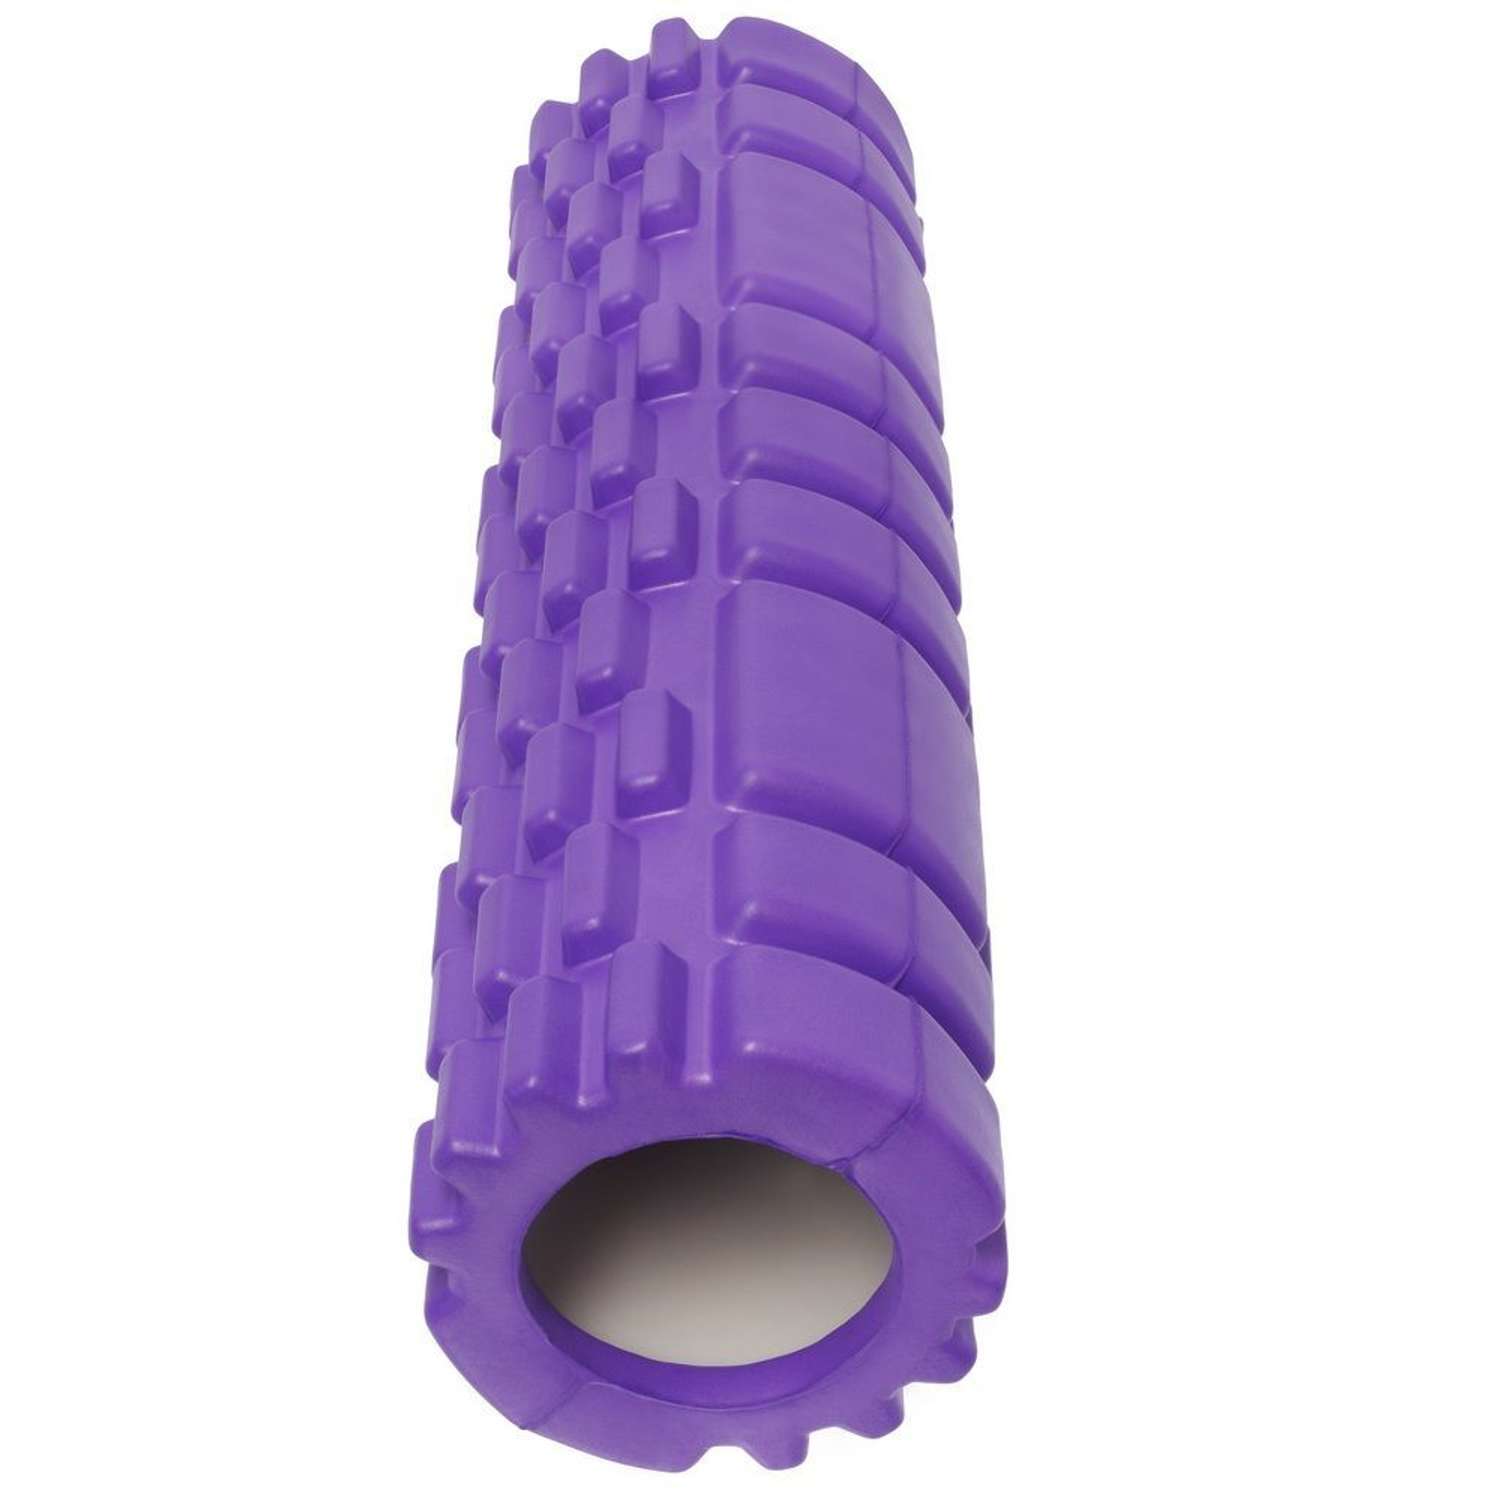 Ролик массажный STRONG BODY спортивный для фитнеса МФР йоги и пилатес 30 см х 8 см фиолетовый - фото 4